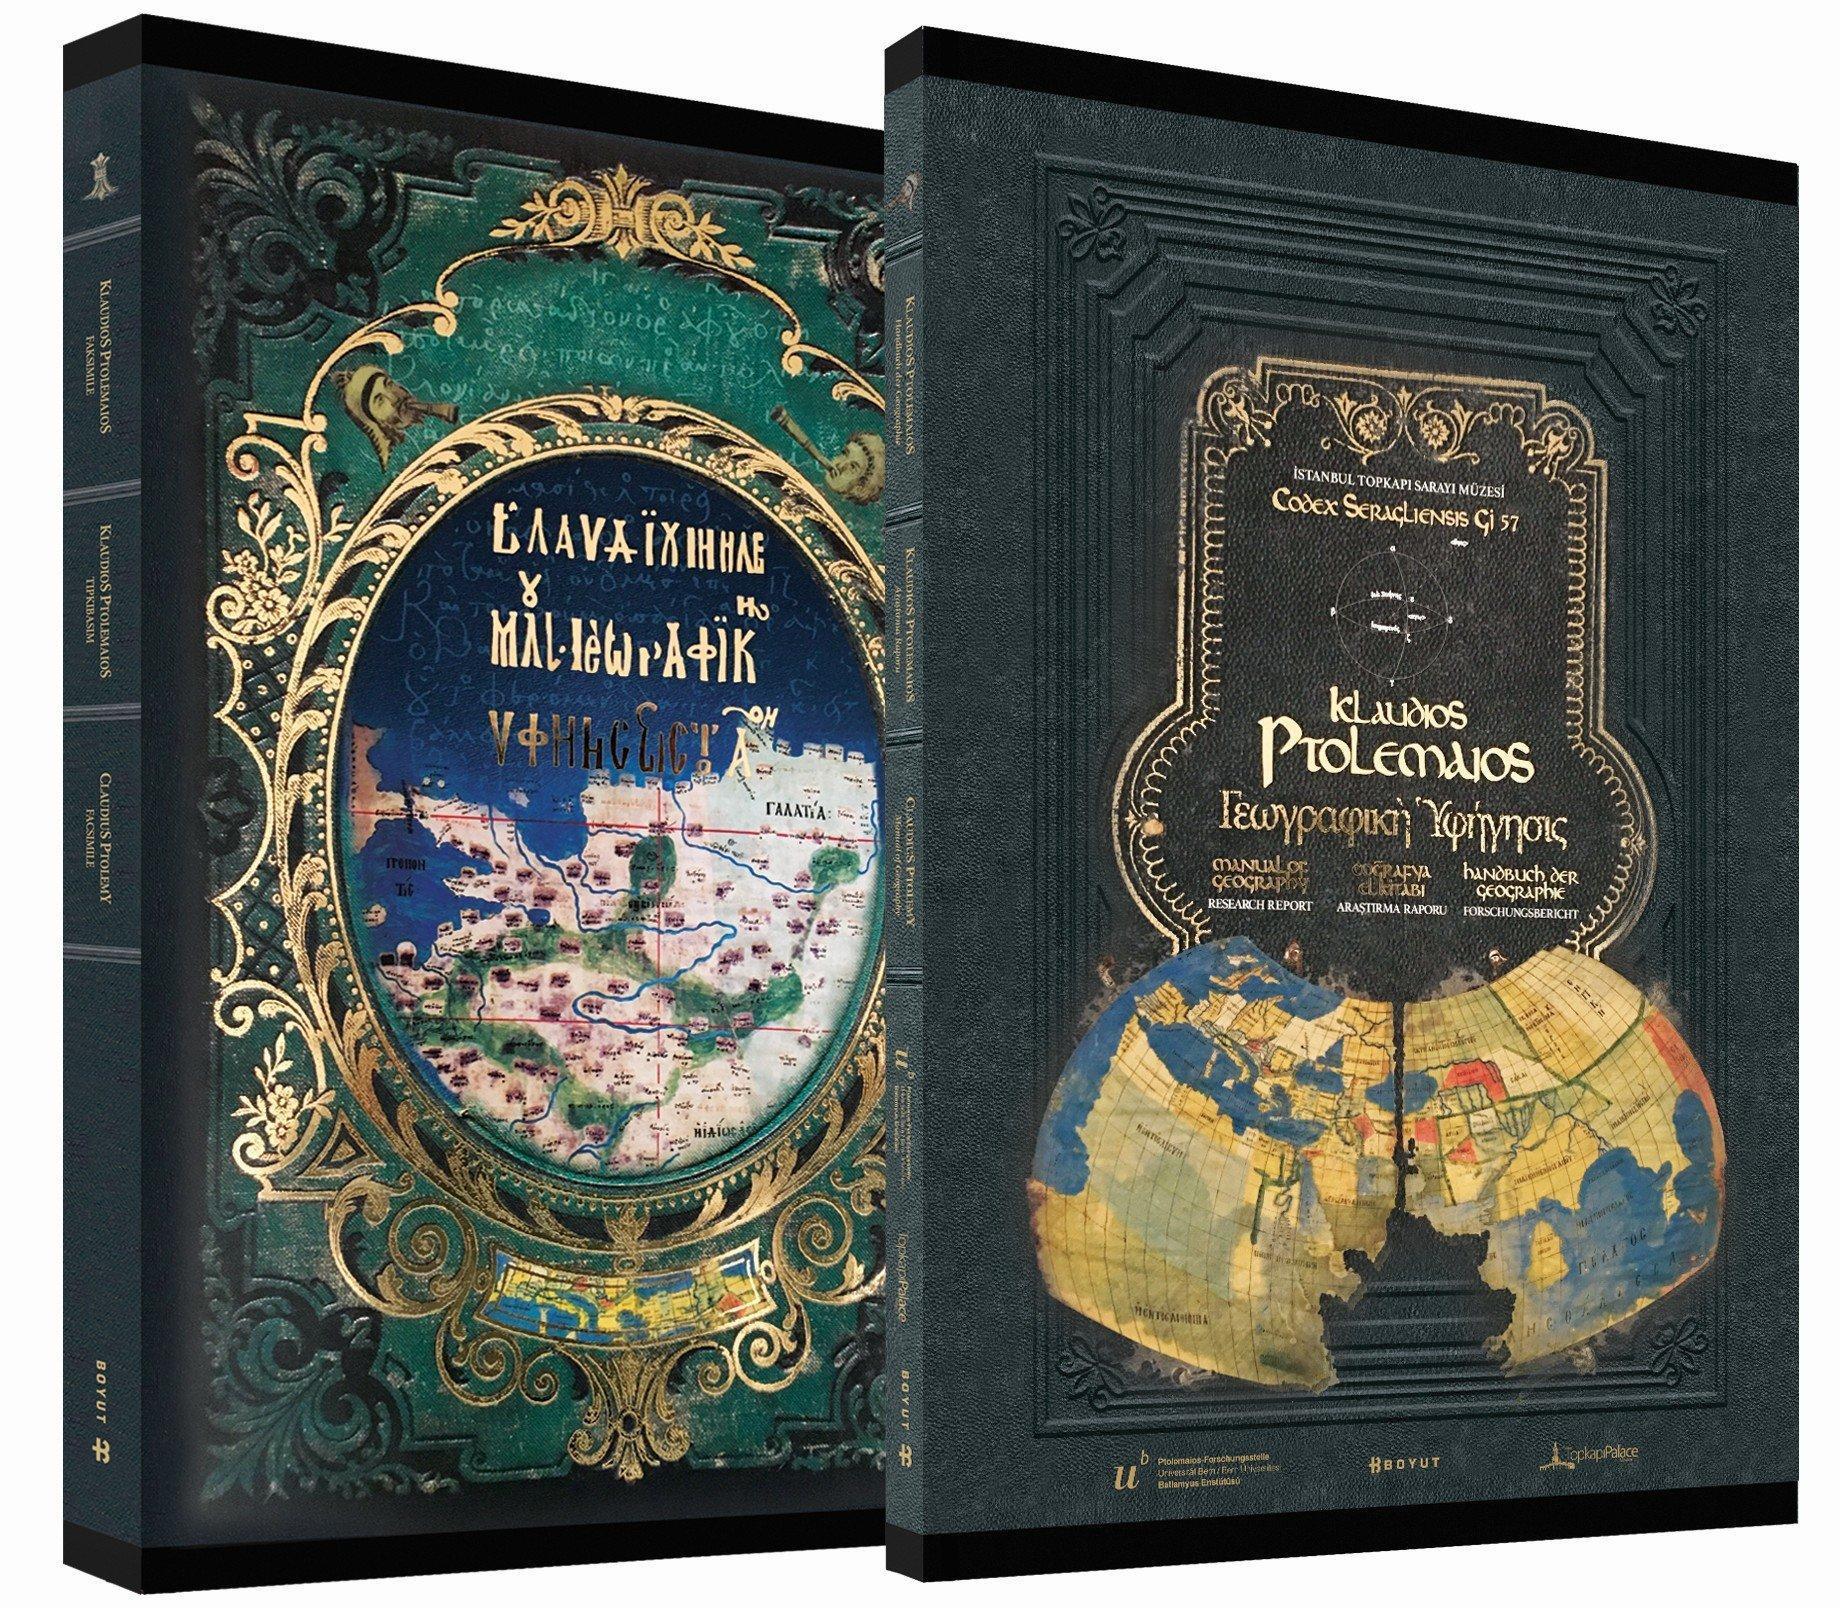 Fatih Sultan Mehmetin çevirttiği dünyanın ilk atlası yayınlandı